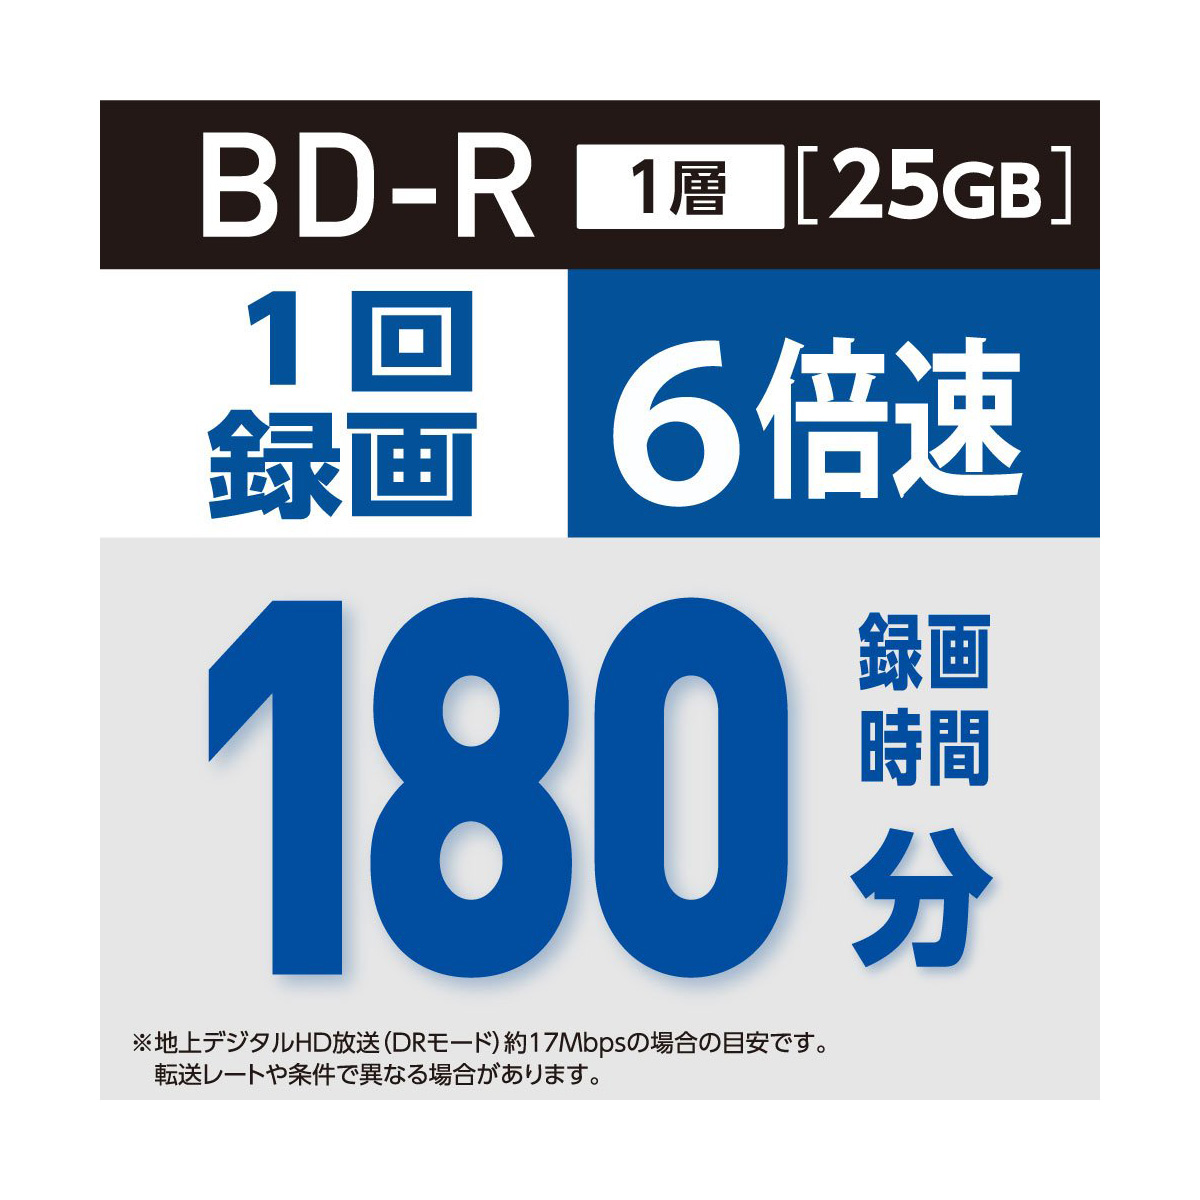 ブルーレイディスク 録画用 BD-R 25GB スピンドル50枚